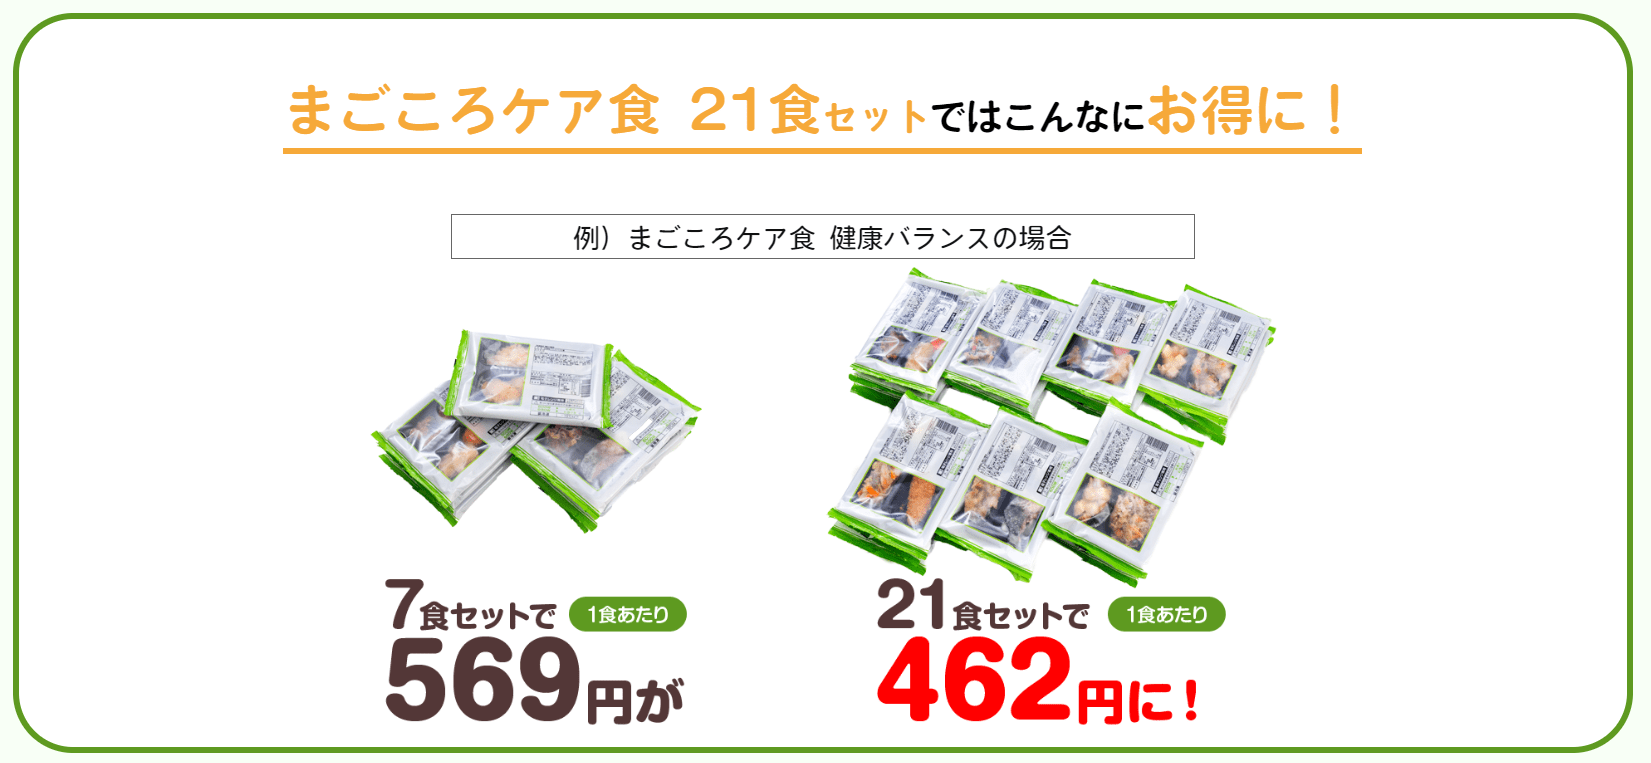 冷凍庫レンタルして21食セットを購入すると、7食セットのときより1食の値段が100円も安くなる